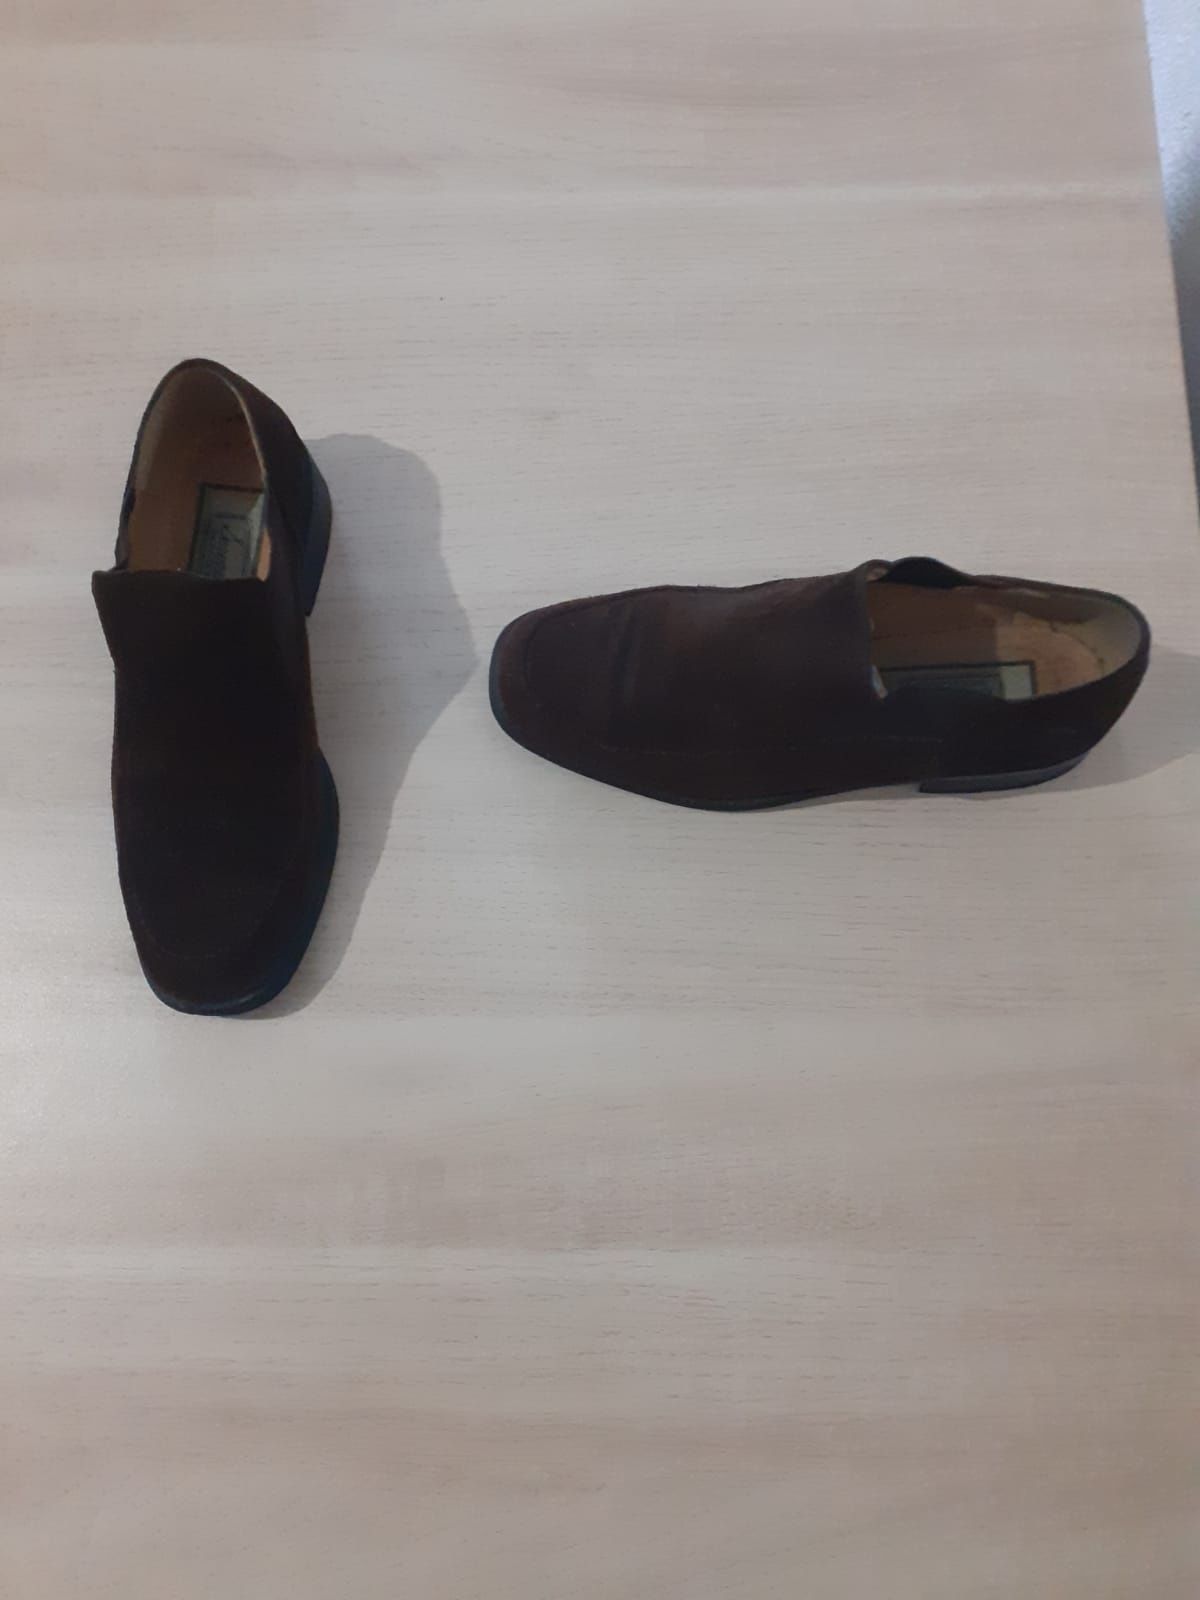 Sapatos Serenela Tamanho 35